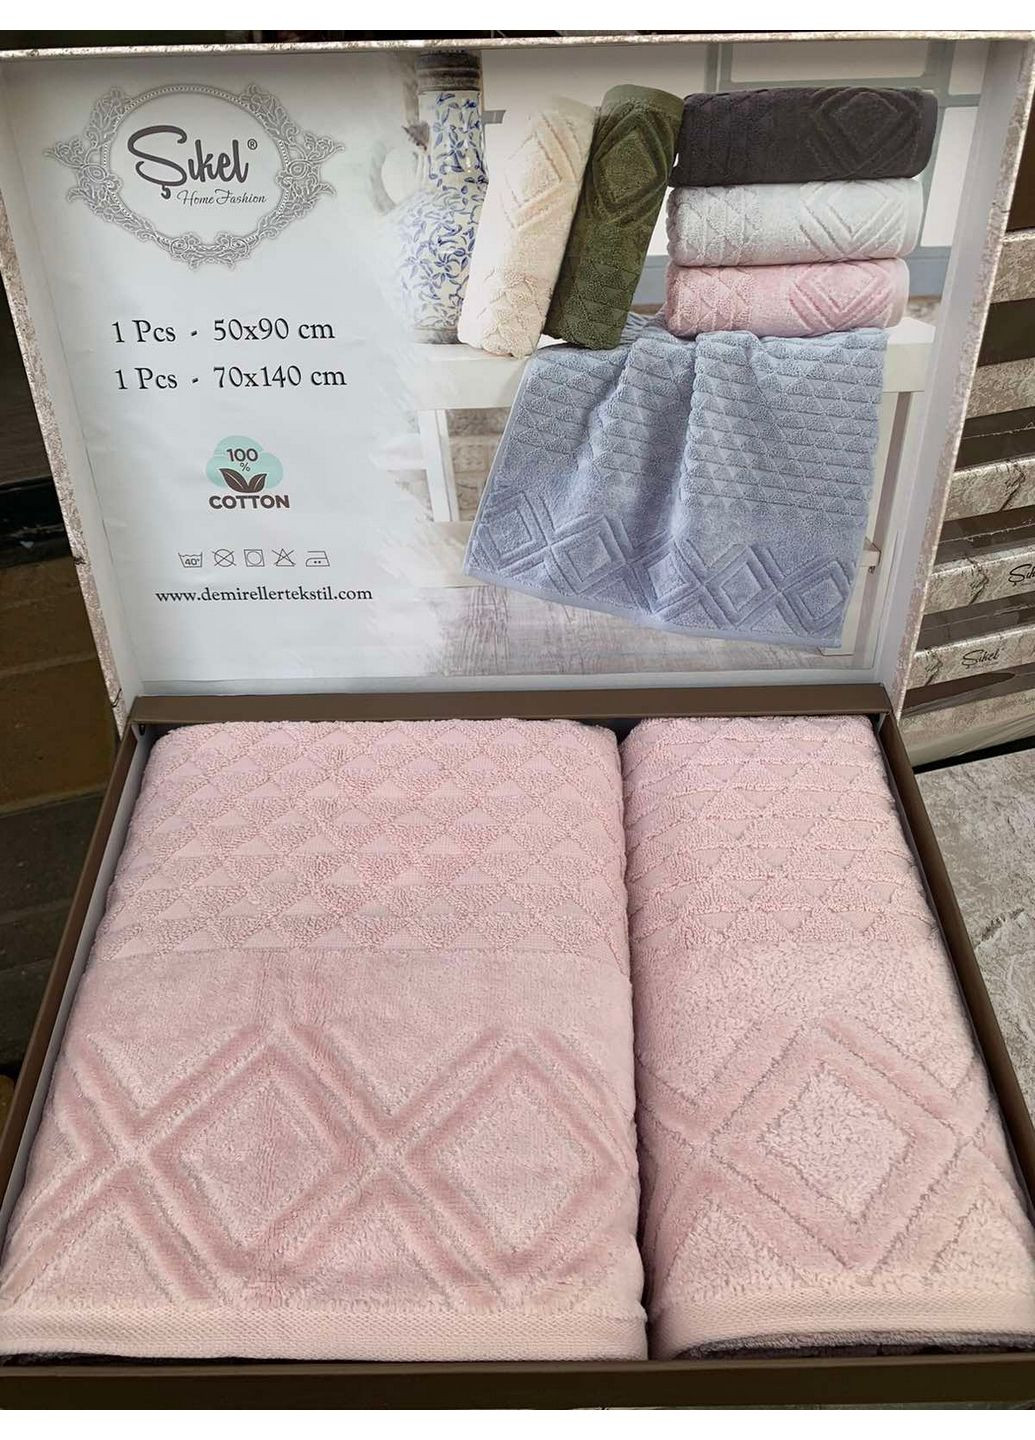 Sikel комплект полотенец комбинированный производство - Турция